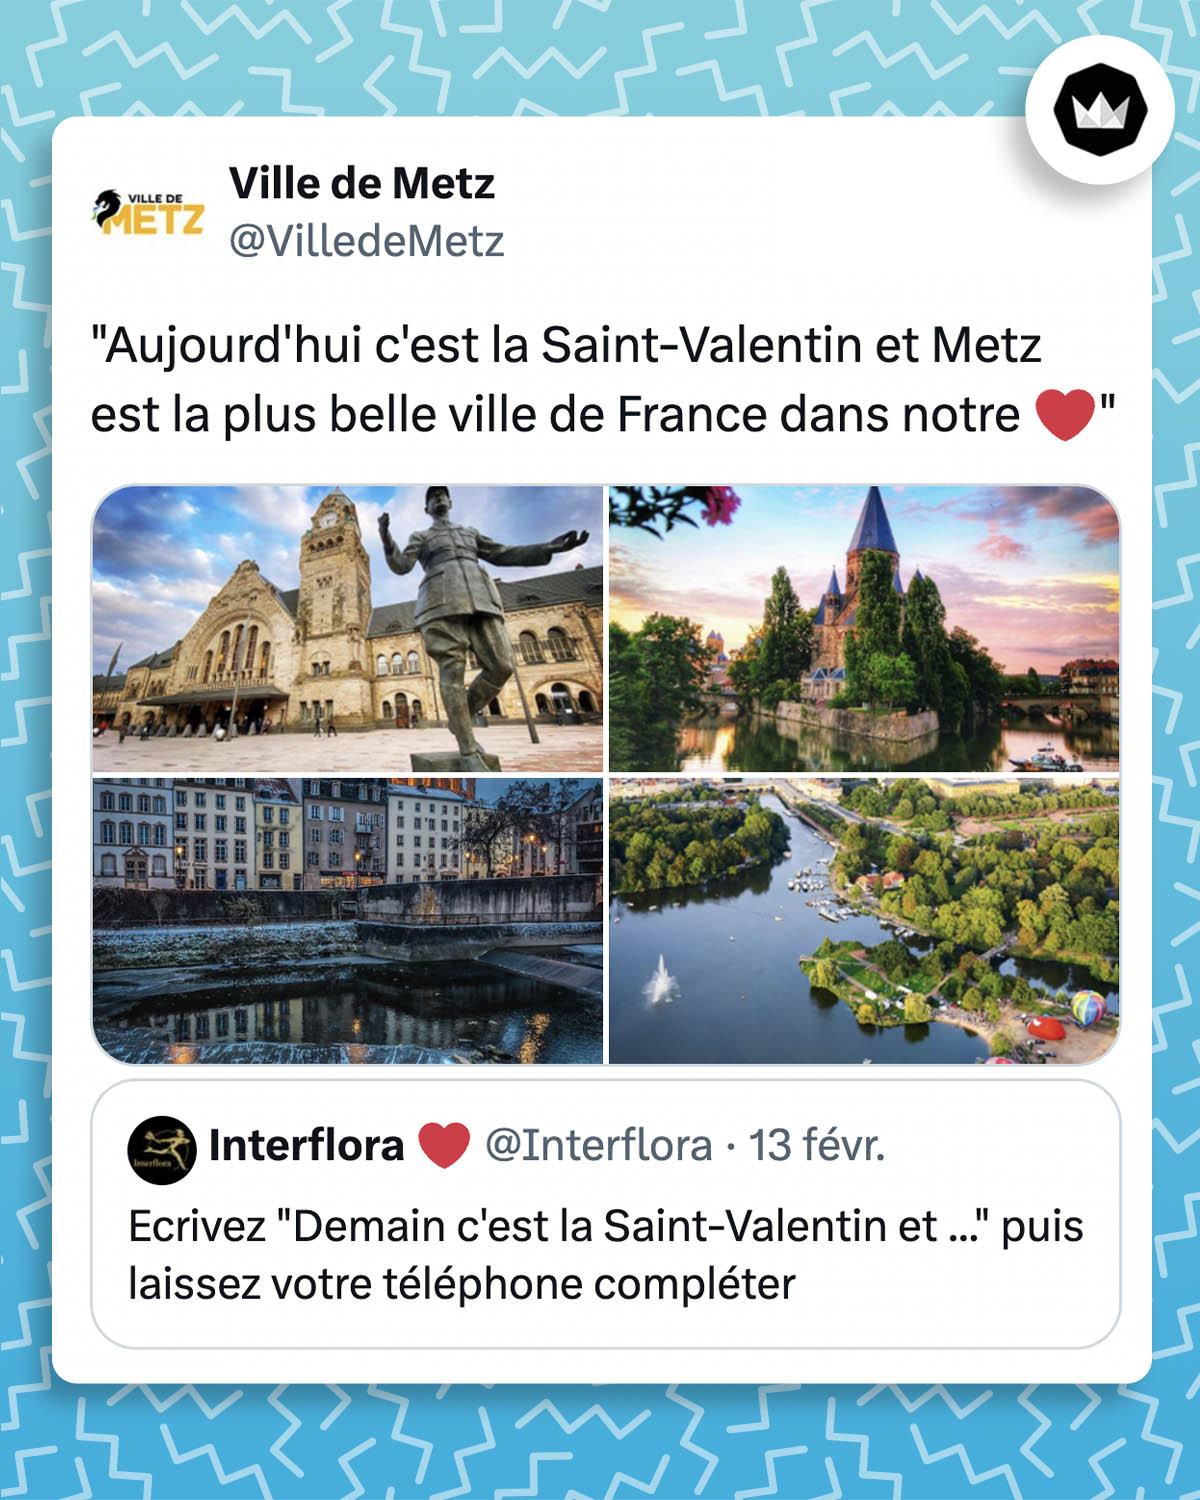 @Interflora :
Ecrivez "Demain c'est la Saint-Valentin et ..." puis laissez votre téléphone compléter
@VilledeMetz :
"Aujourd'hui c'est la Saint-Valentin et Metz est la plus belle ville de France dans notre ❤️"